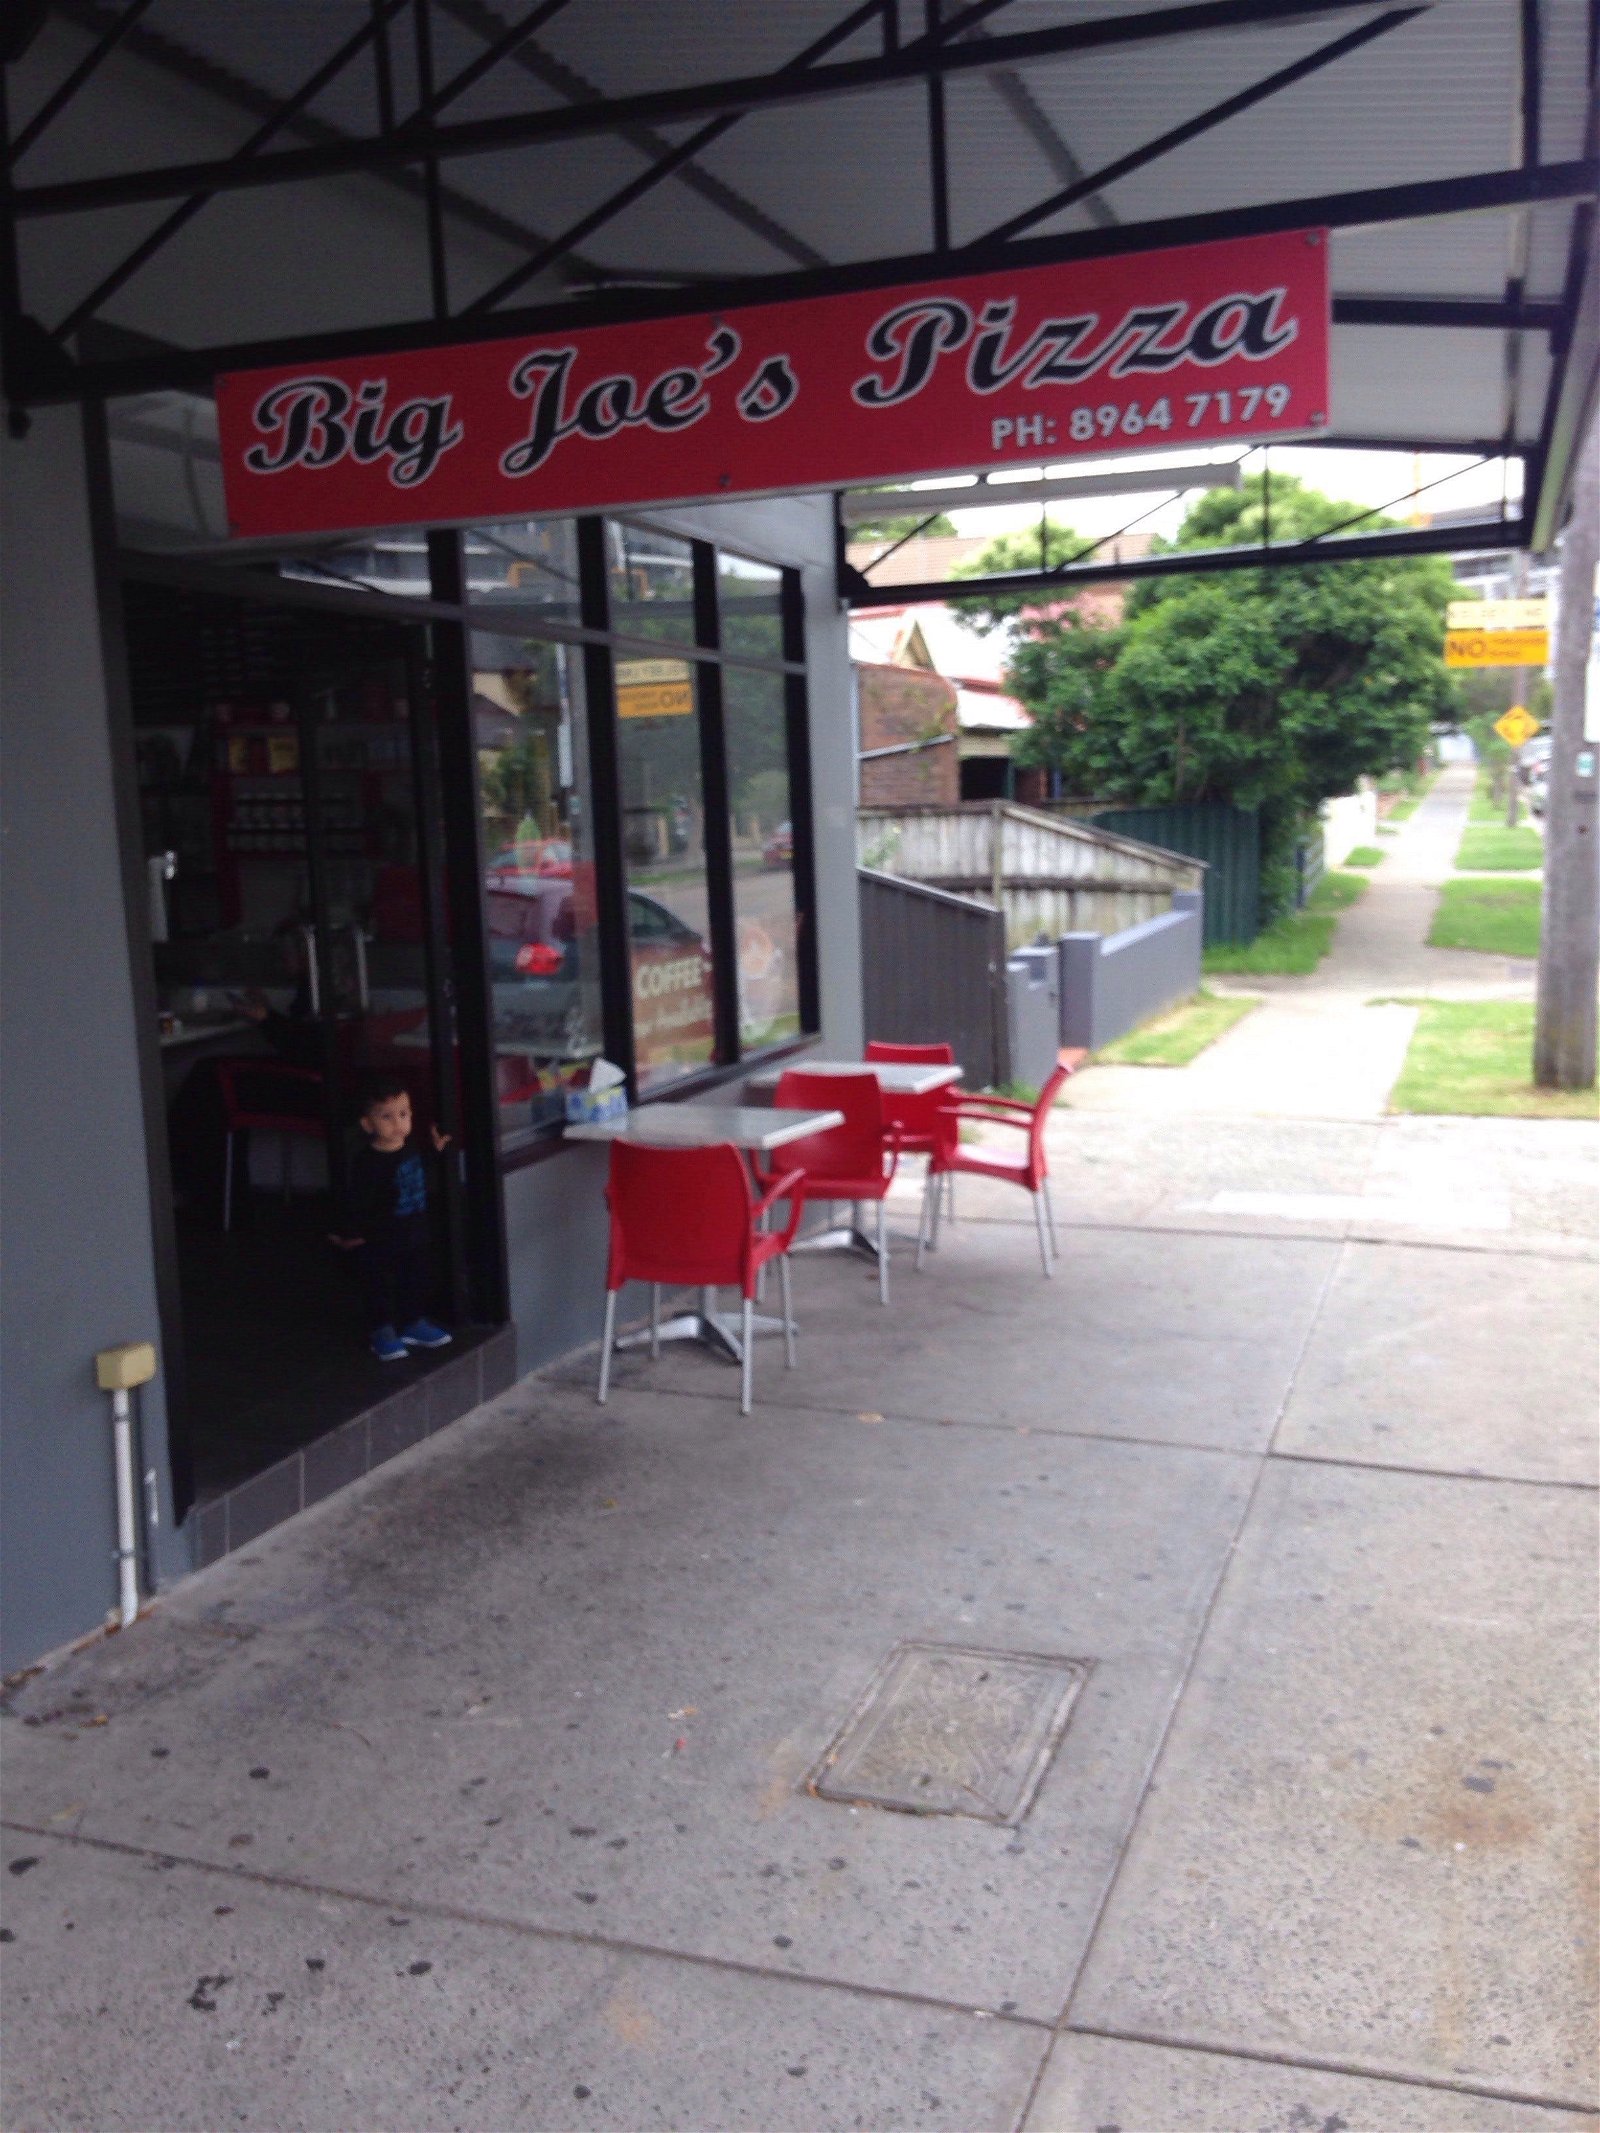 Big Joe's Pizza - Broome Tourism